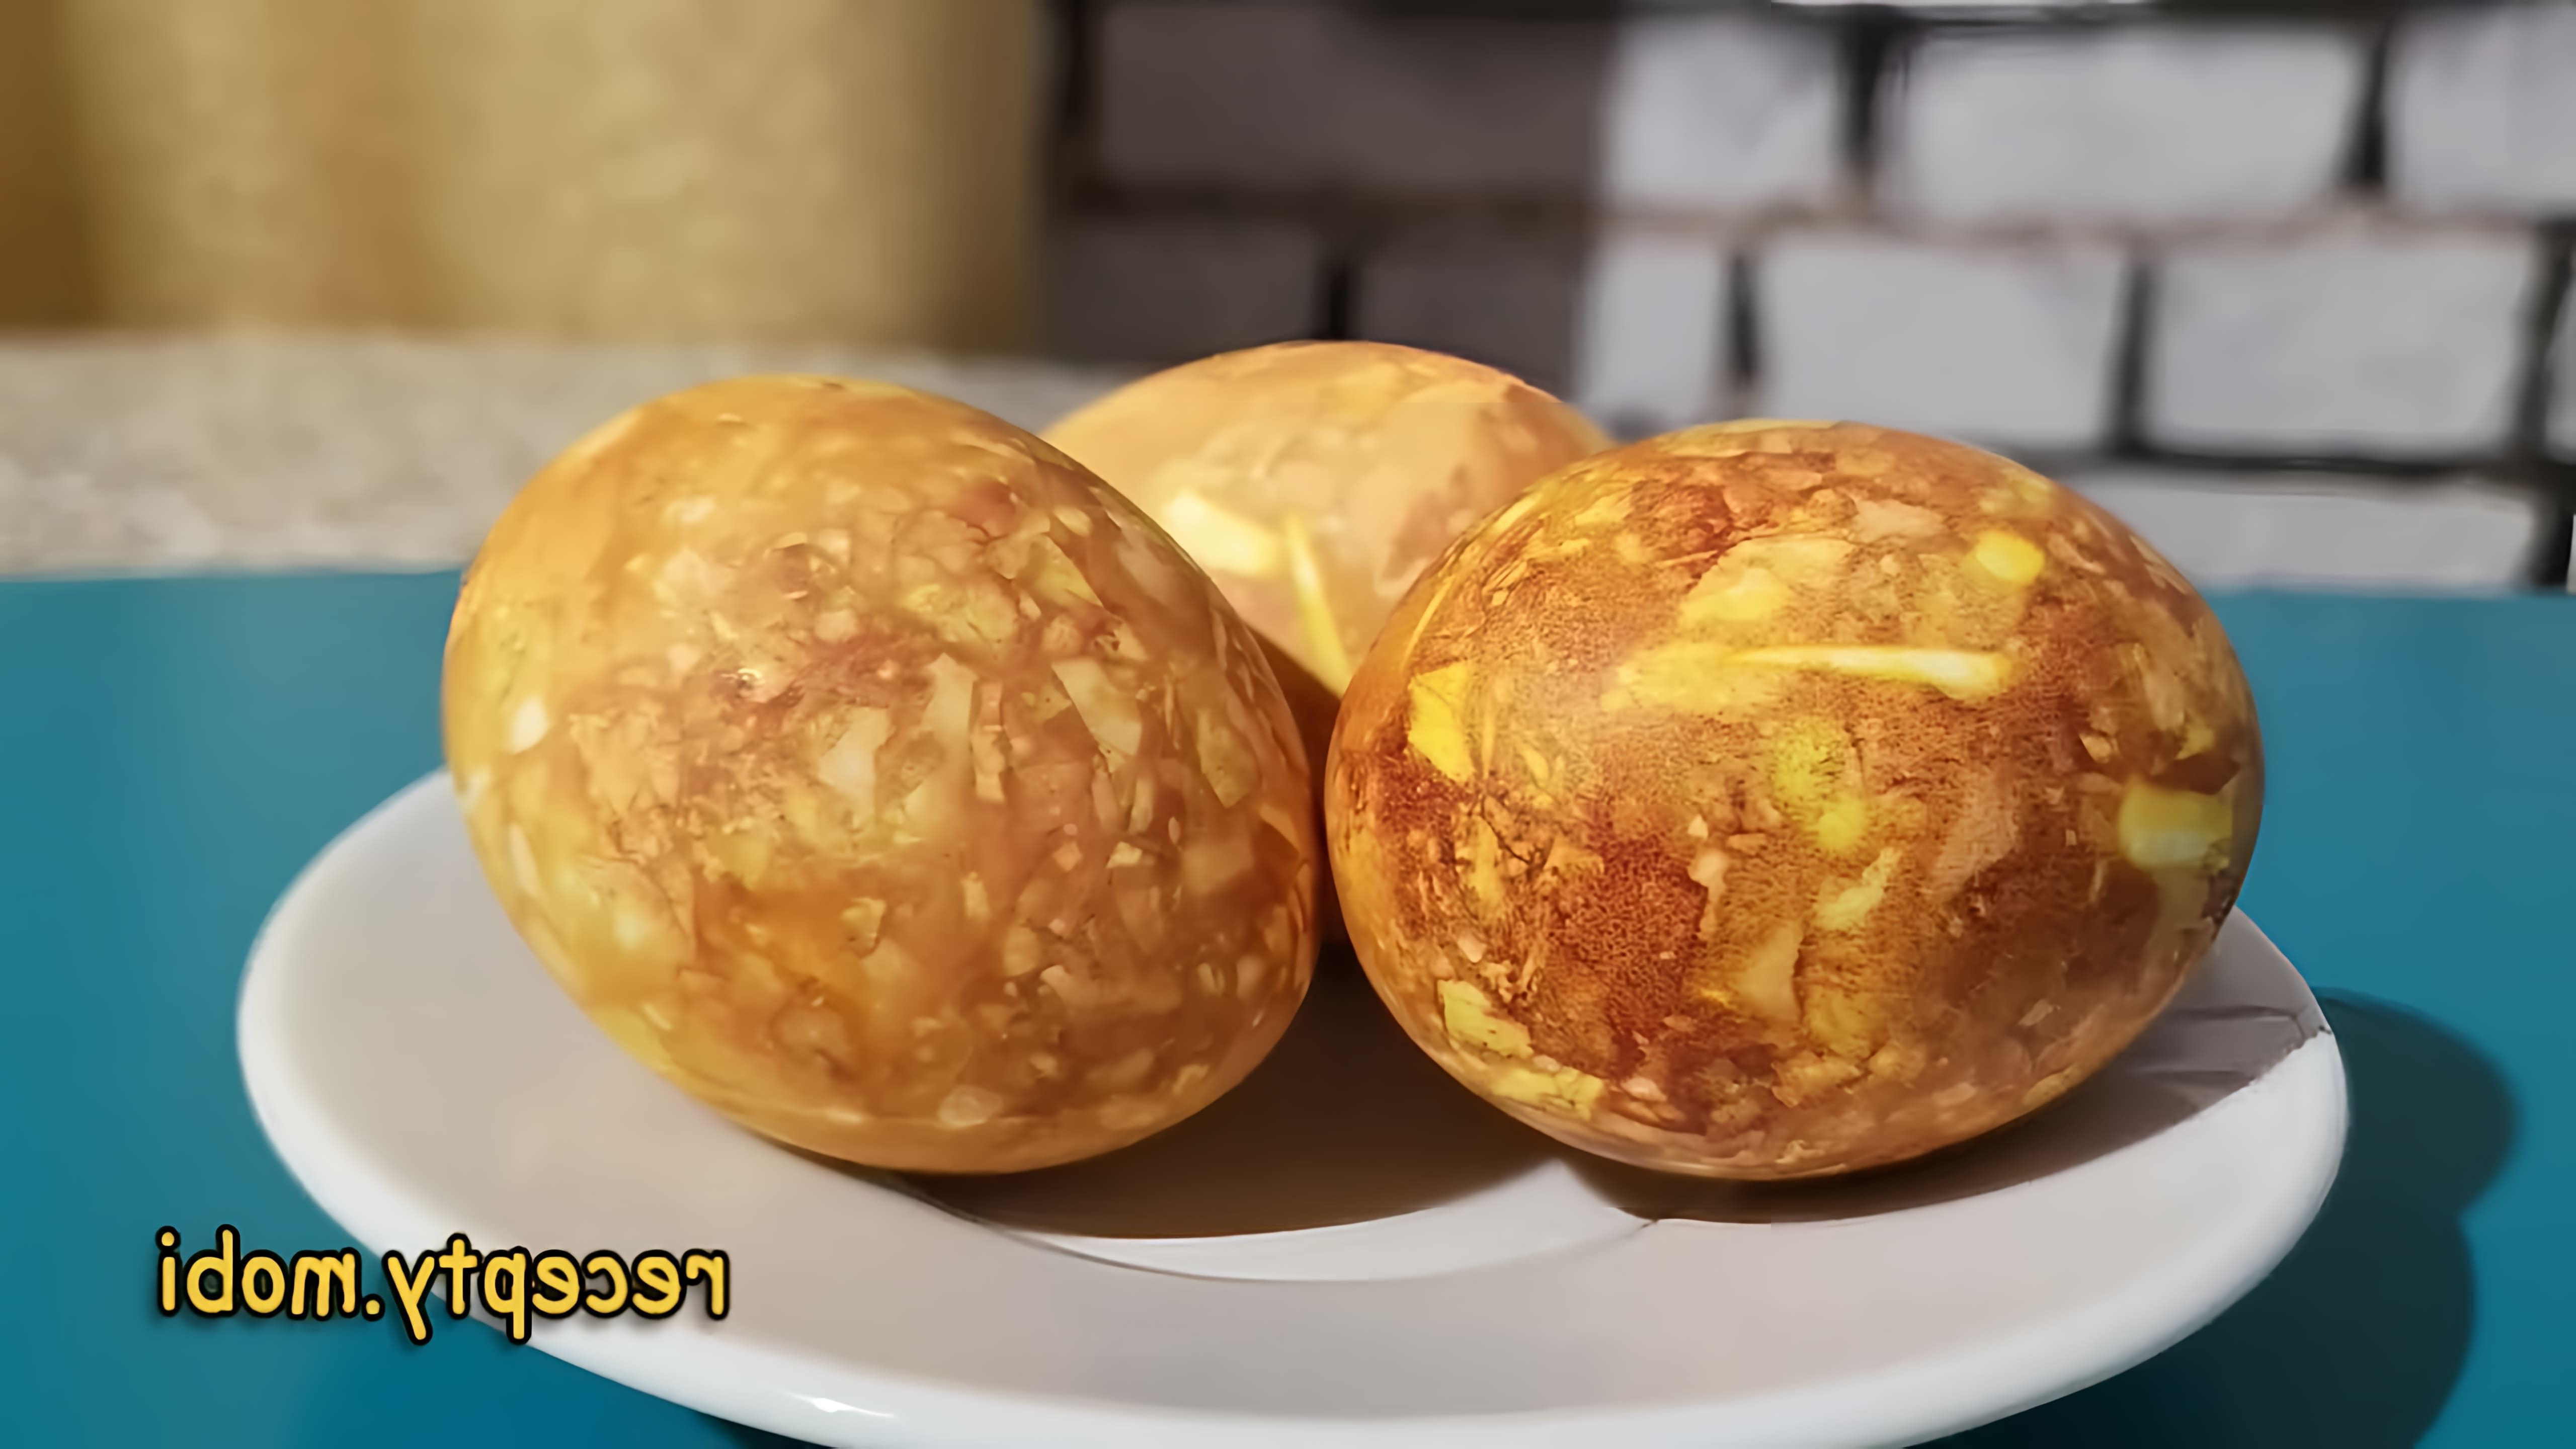 В этом видео показано, как покрасить яйца в луковой шелухе для создания мраморного эффекта